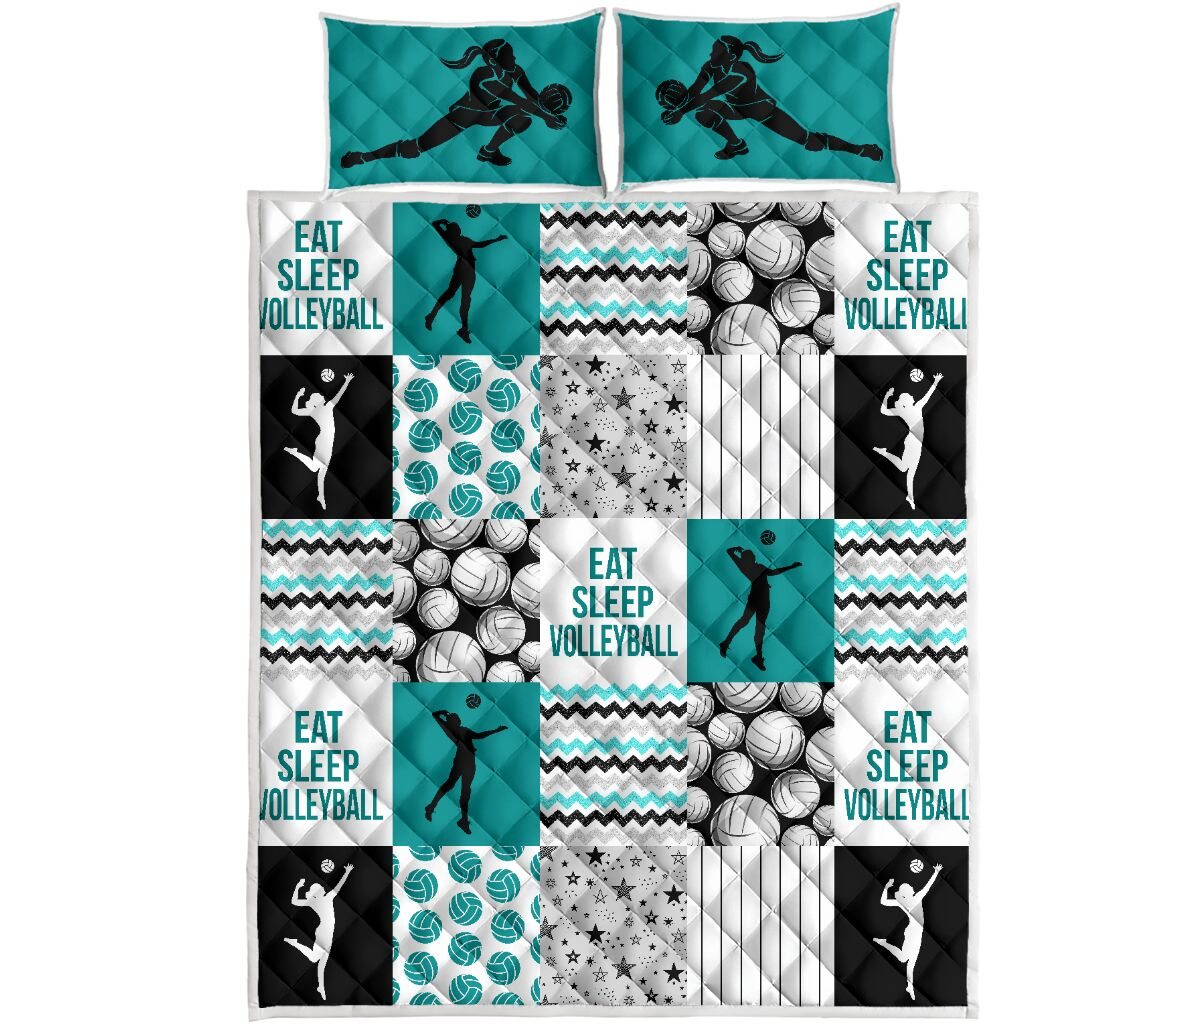 Eat sleep Volleyball shape quilt4